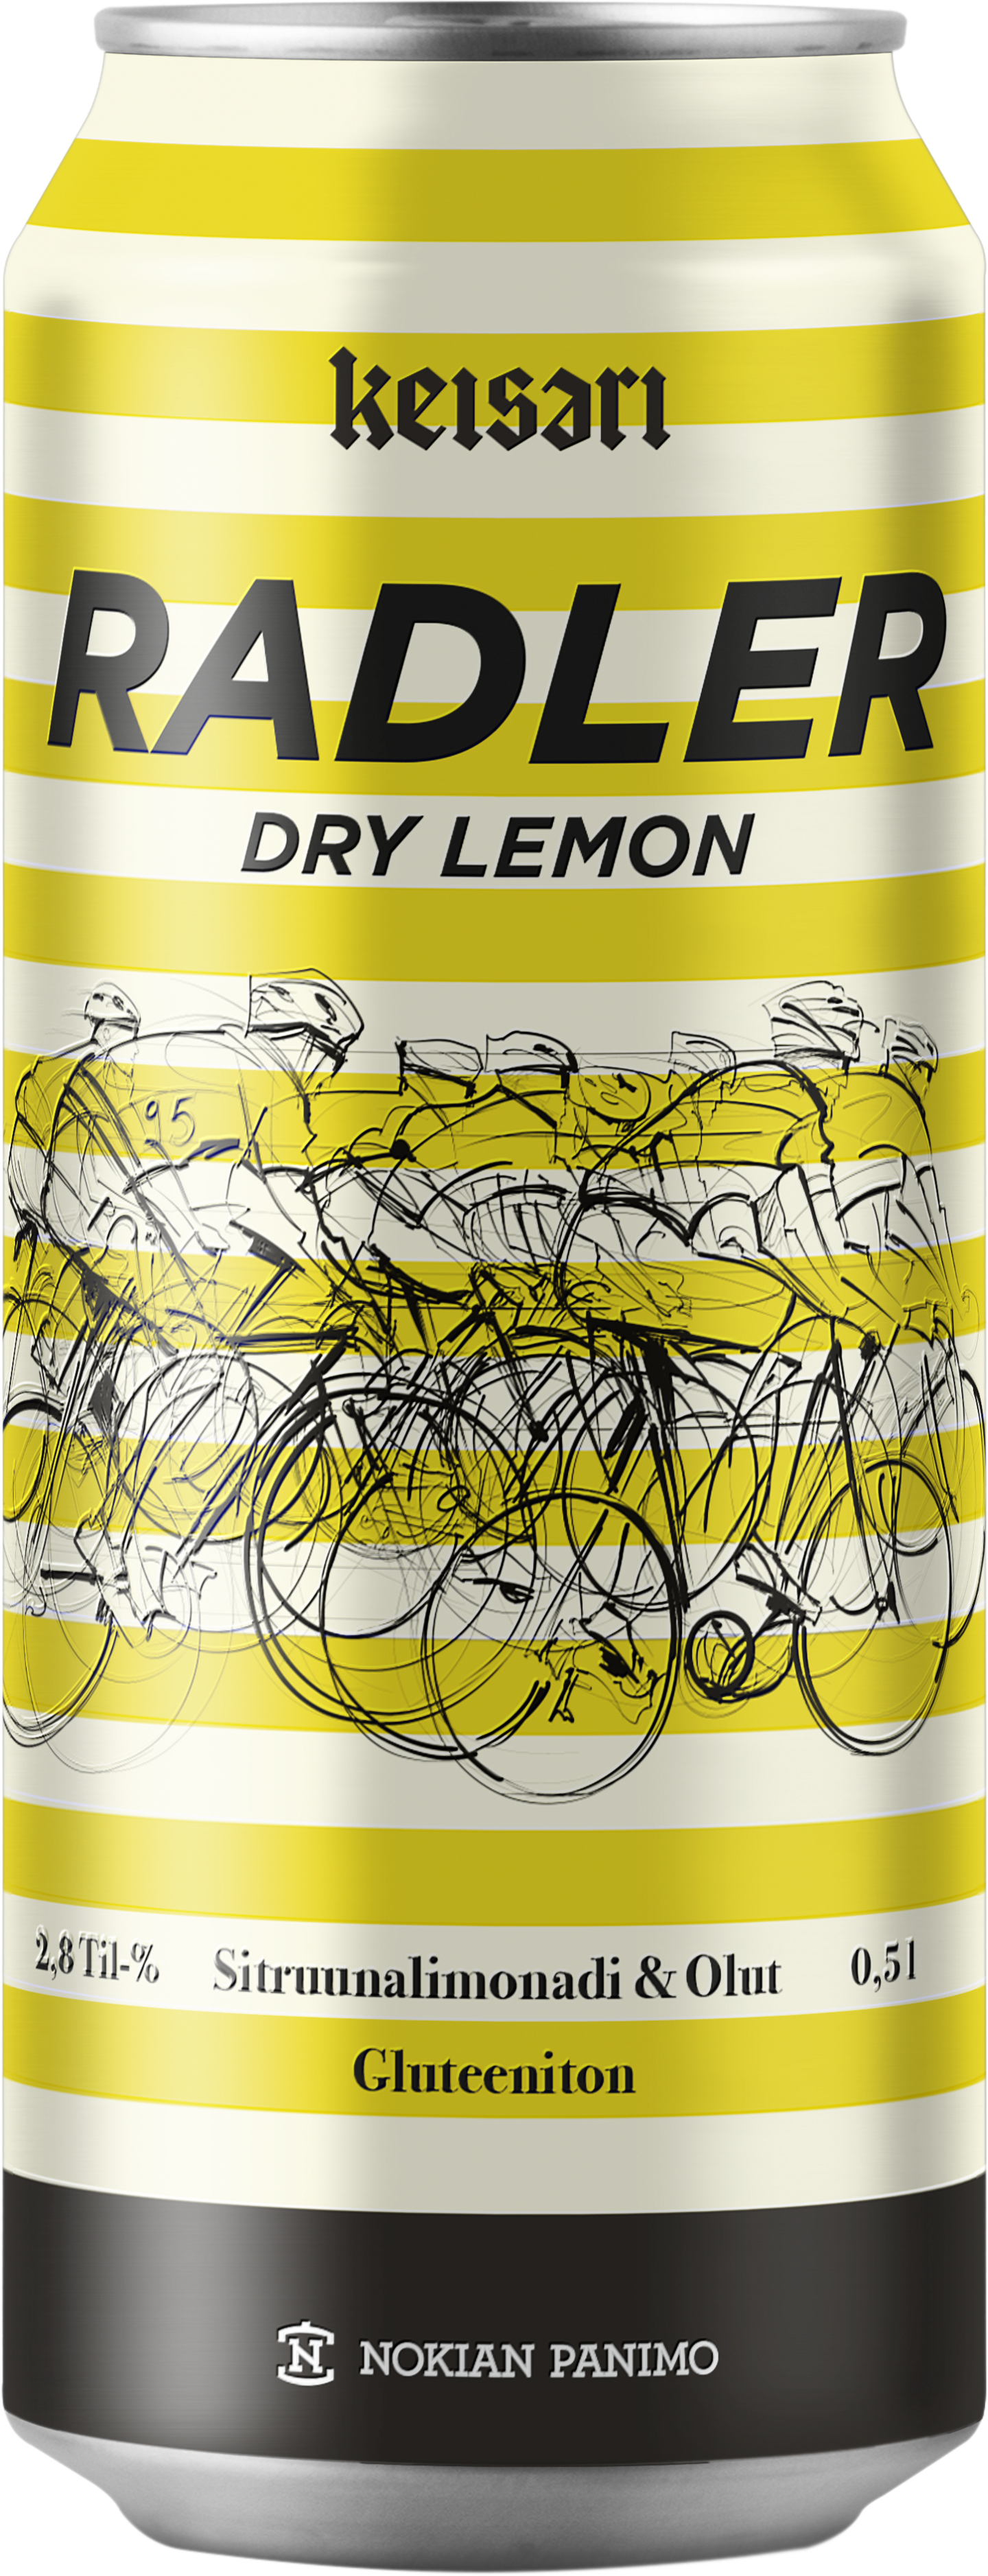 Keisari Dry Radler Lemon 2,8% 0,5l gluteeniton